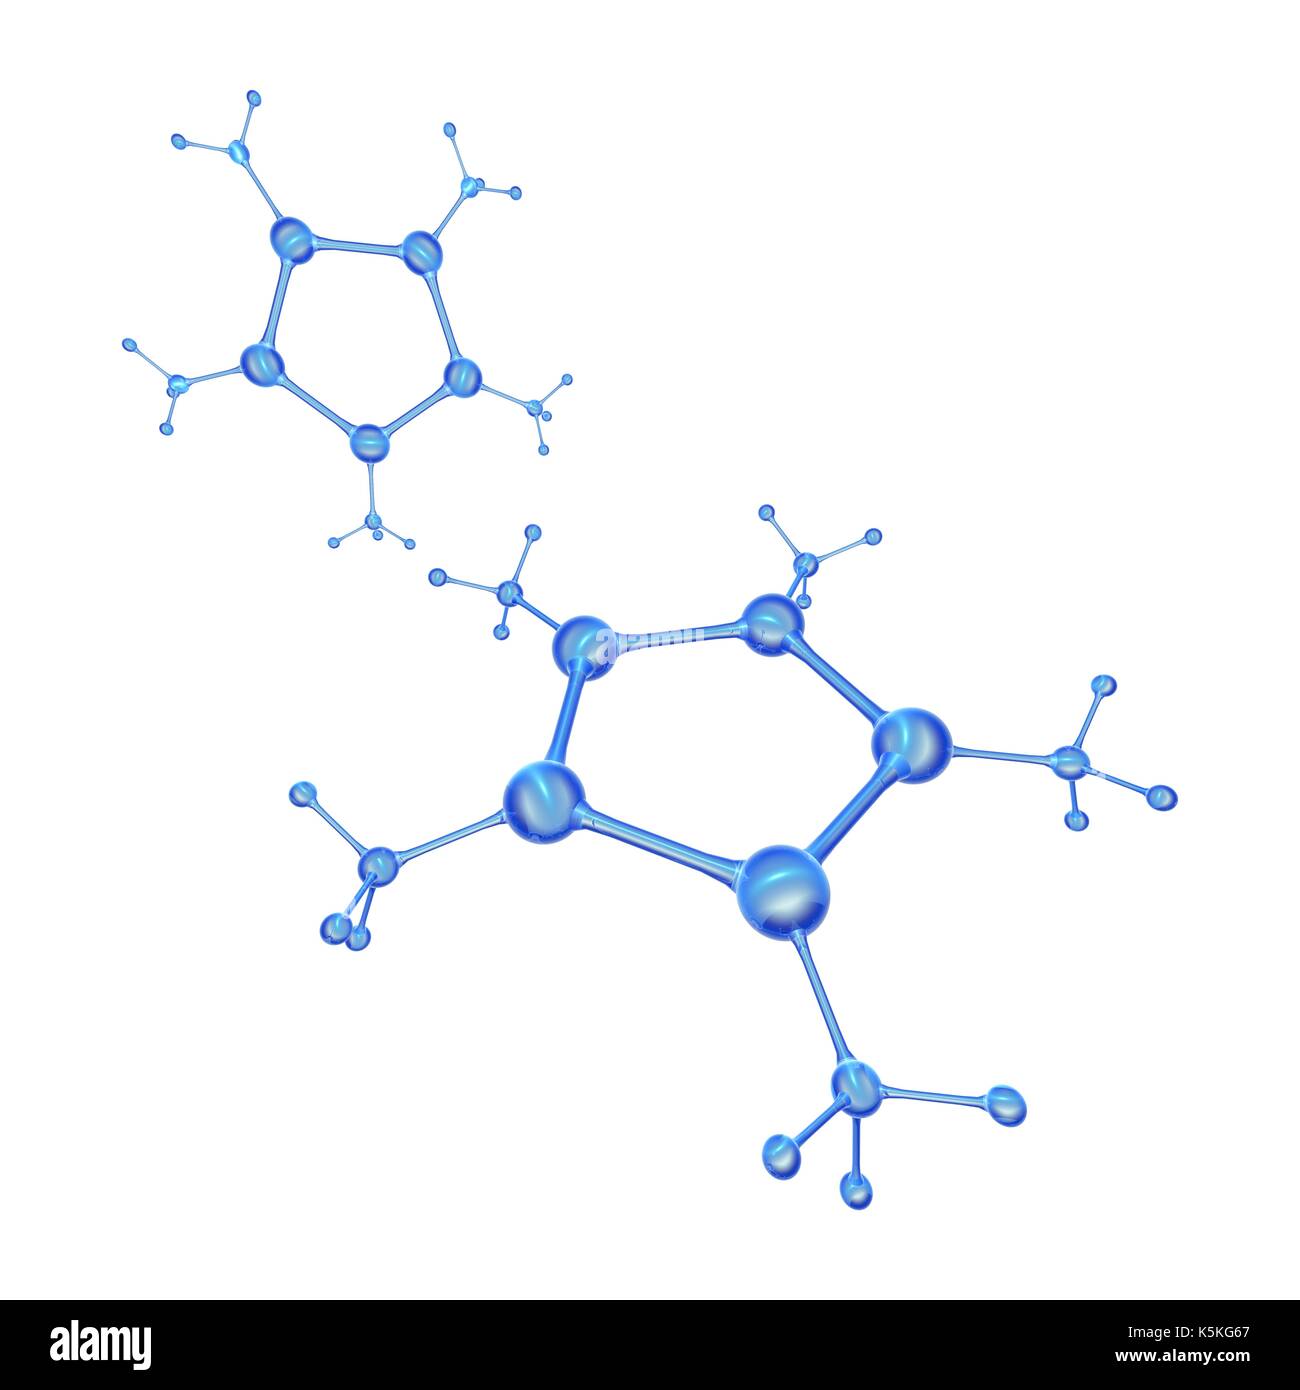 Abstrakte Molekülmodell, Illustration. Stockfoto